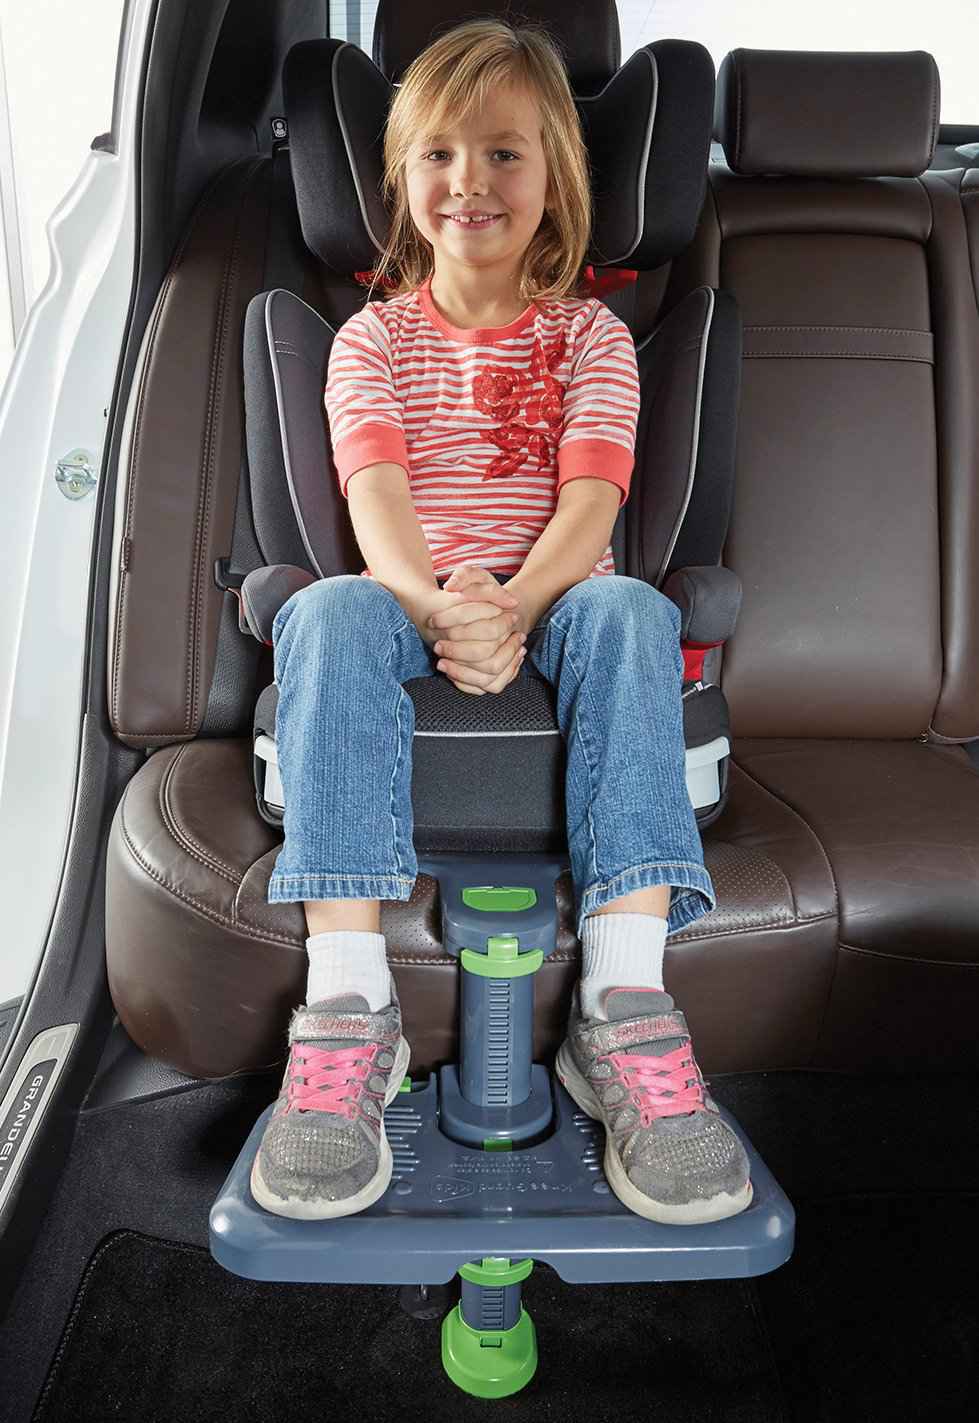 KneeGuard Kids3 Car Seat Footrest